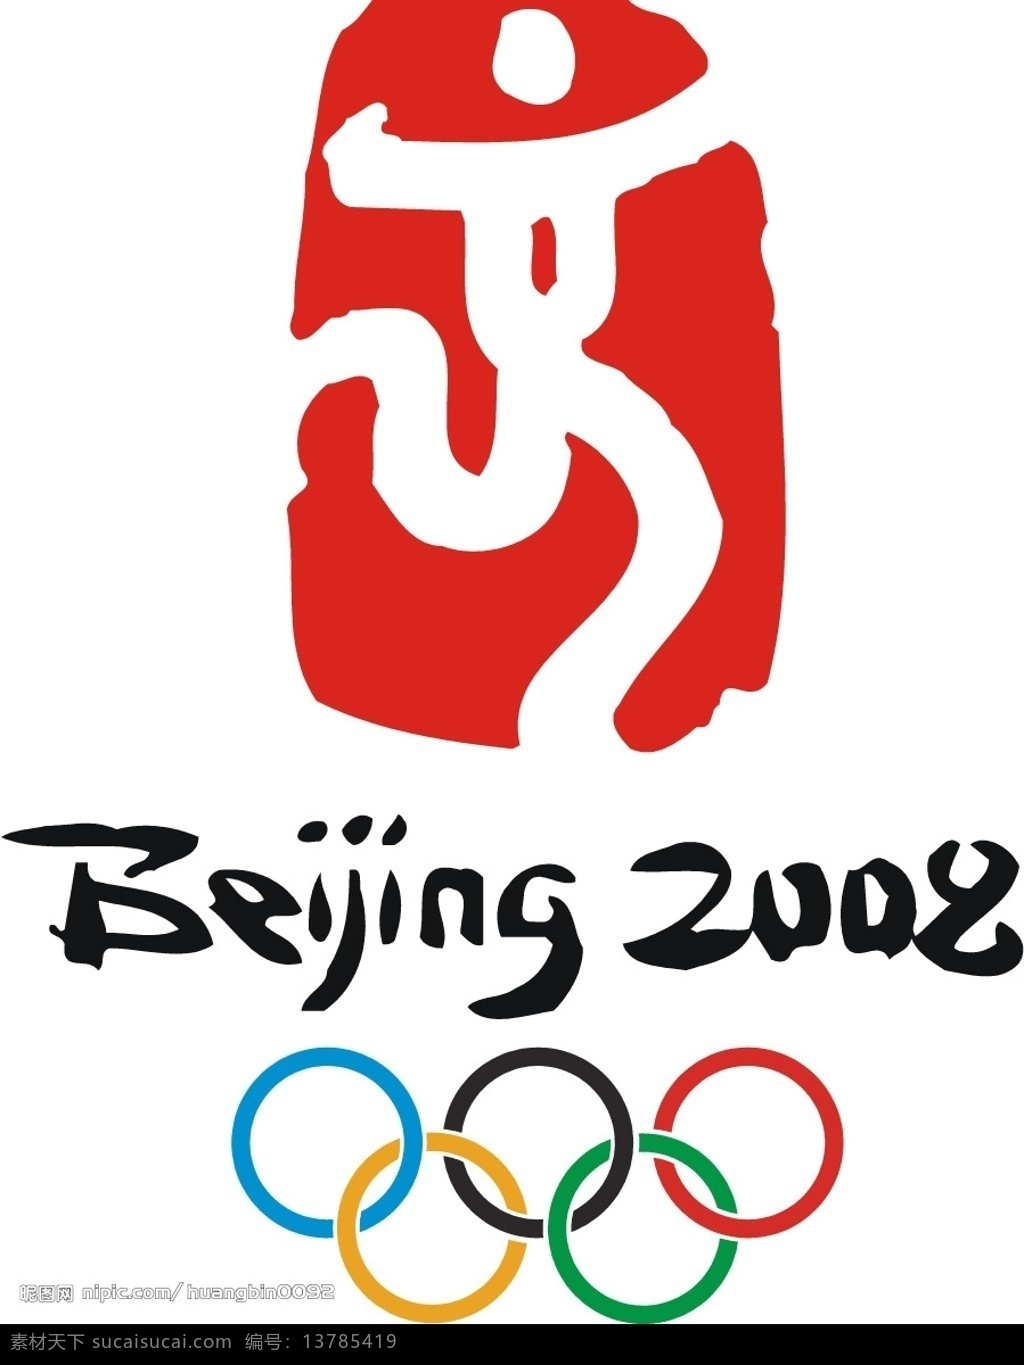 奥运 福娃 矢量 奥运吉祥物 标识标志图标 公共标识标志 奥运福娃 矢量图库